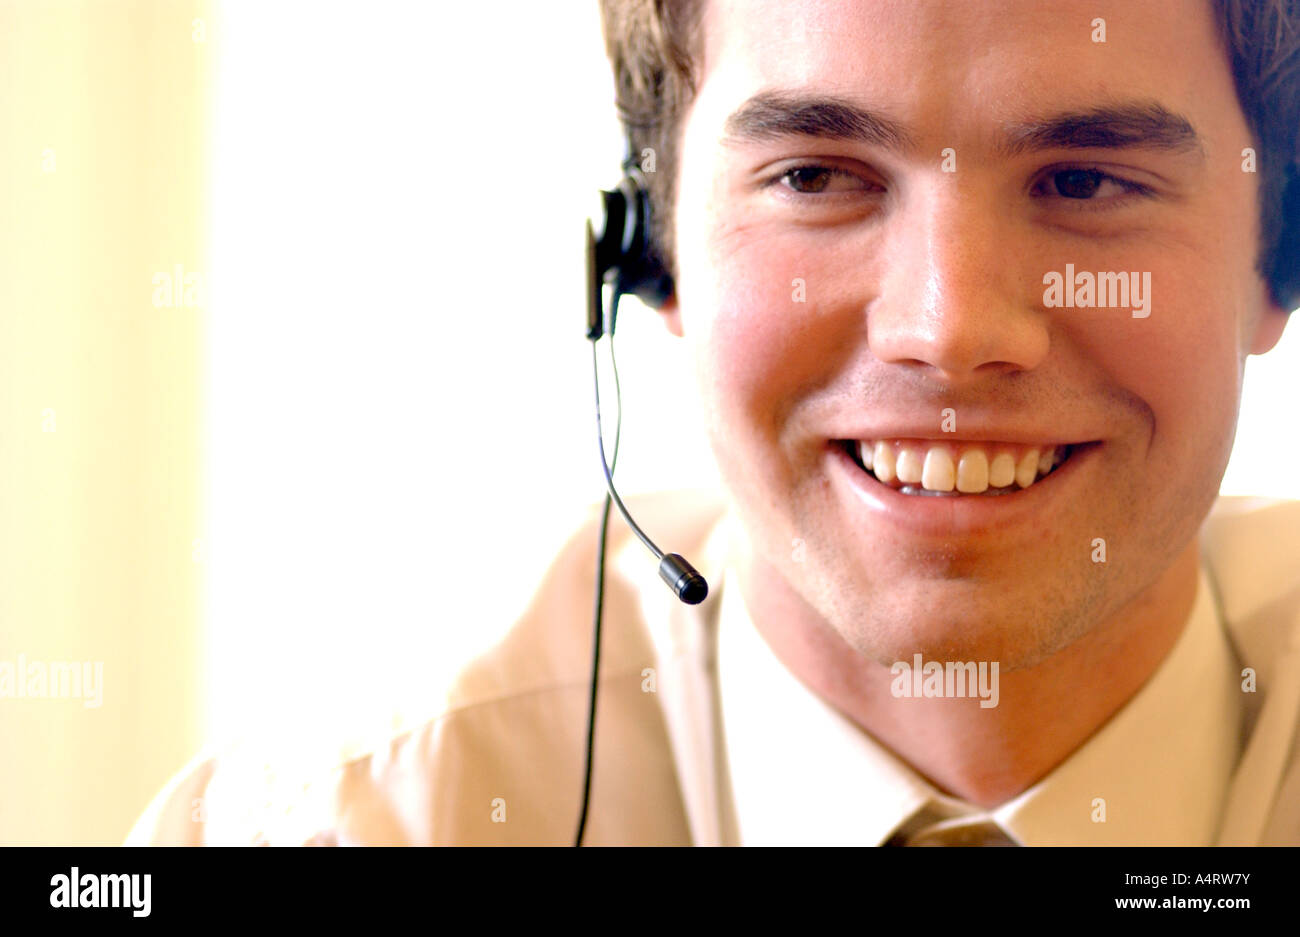 Image libre de photographie de la happy call centre employee London UK Banque D'Images